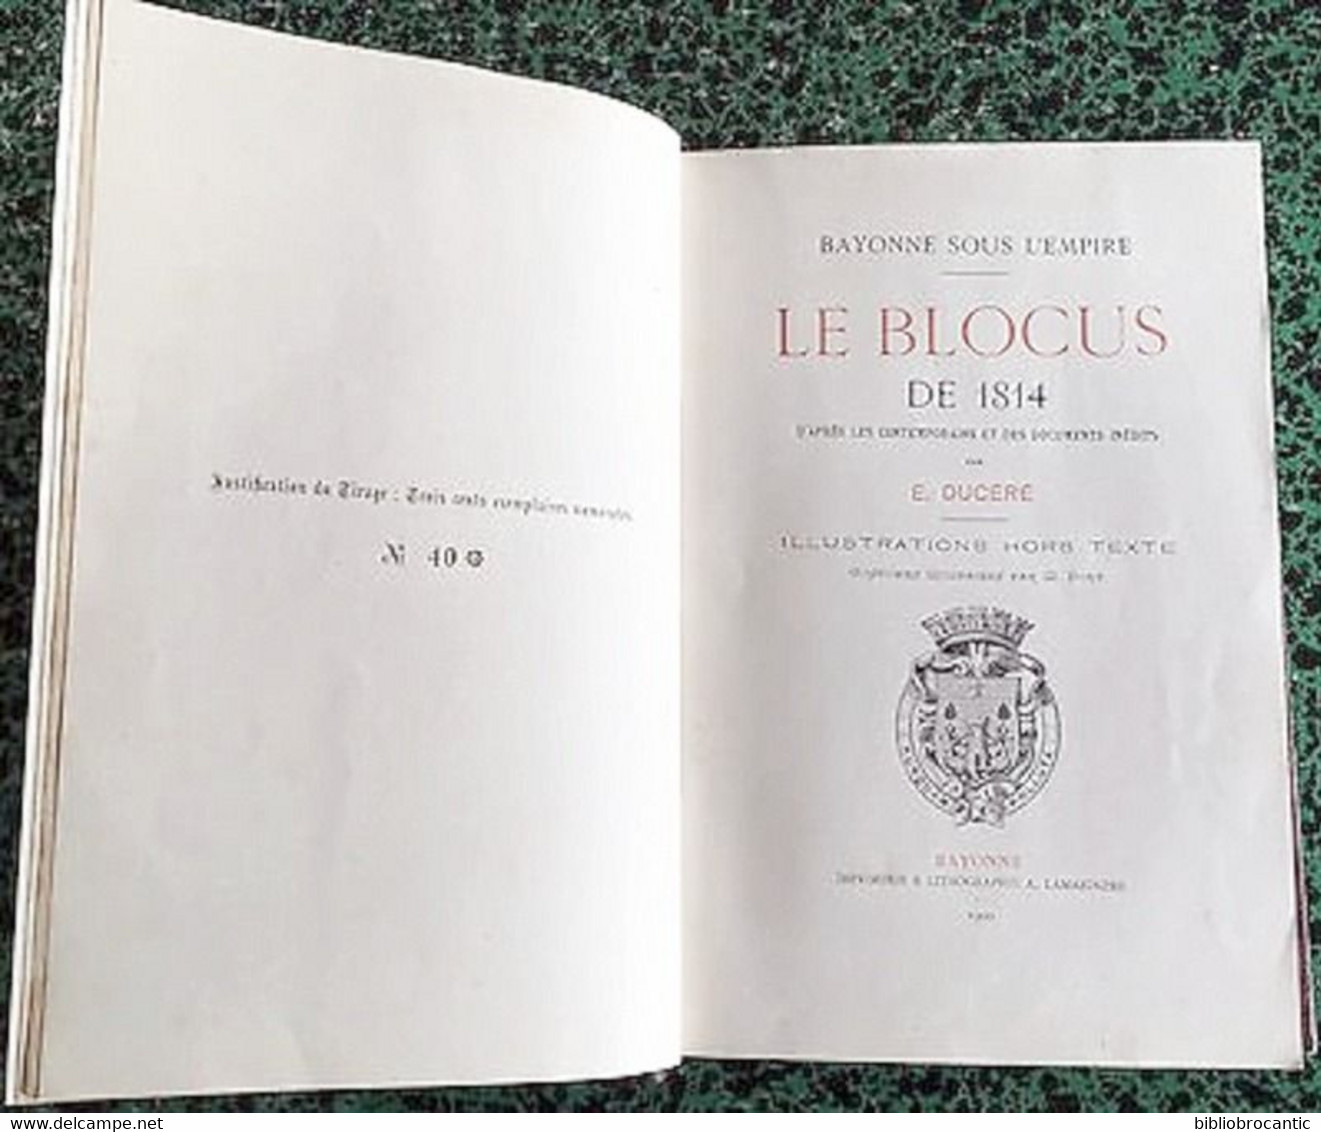 BAYONNE SOUS L'EMPIRE * LE BLOCUS DE 1814 *par Edouard DUCERE E.O. 1900 Exemplaire N°40/300 - Pays Basque